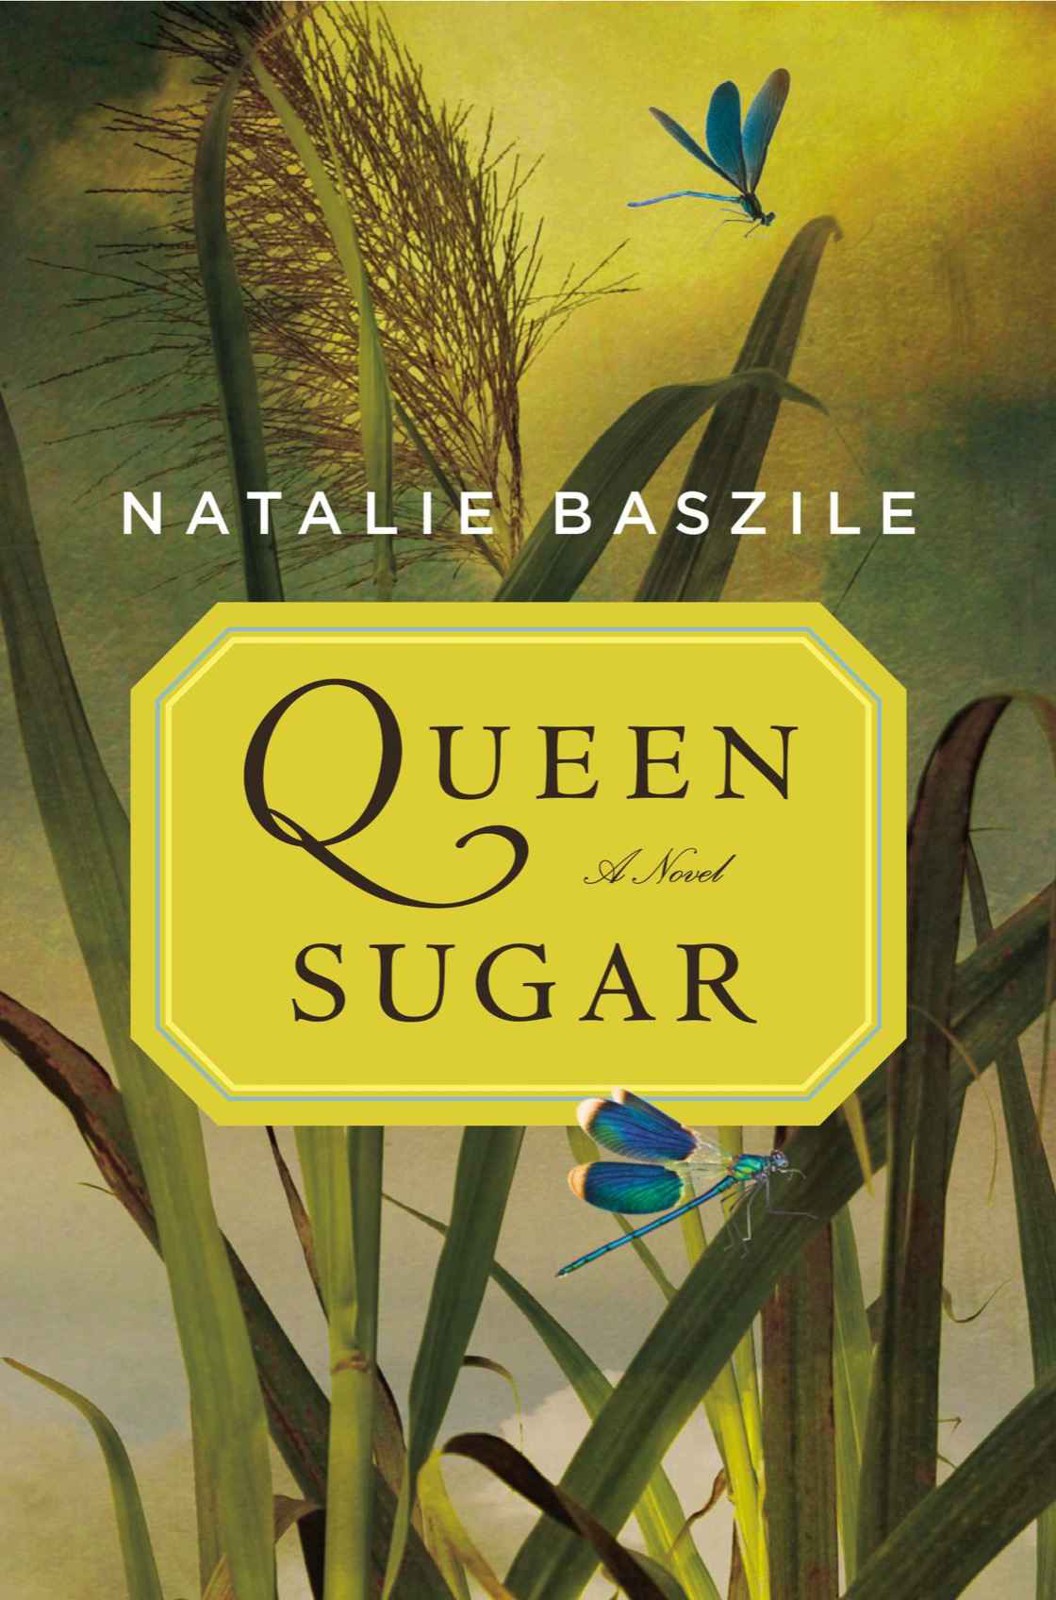 Baszile Natalie - Queen Sugar скачать бесплатно